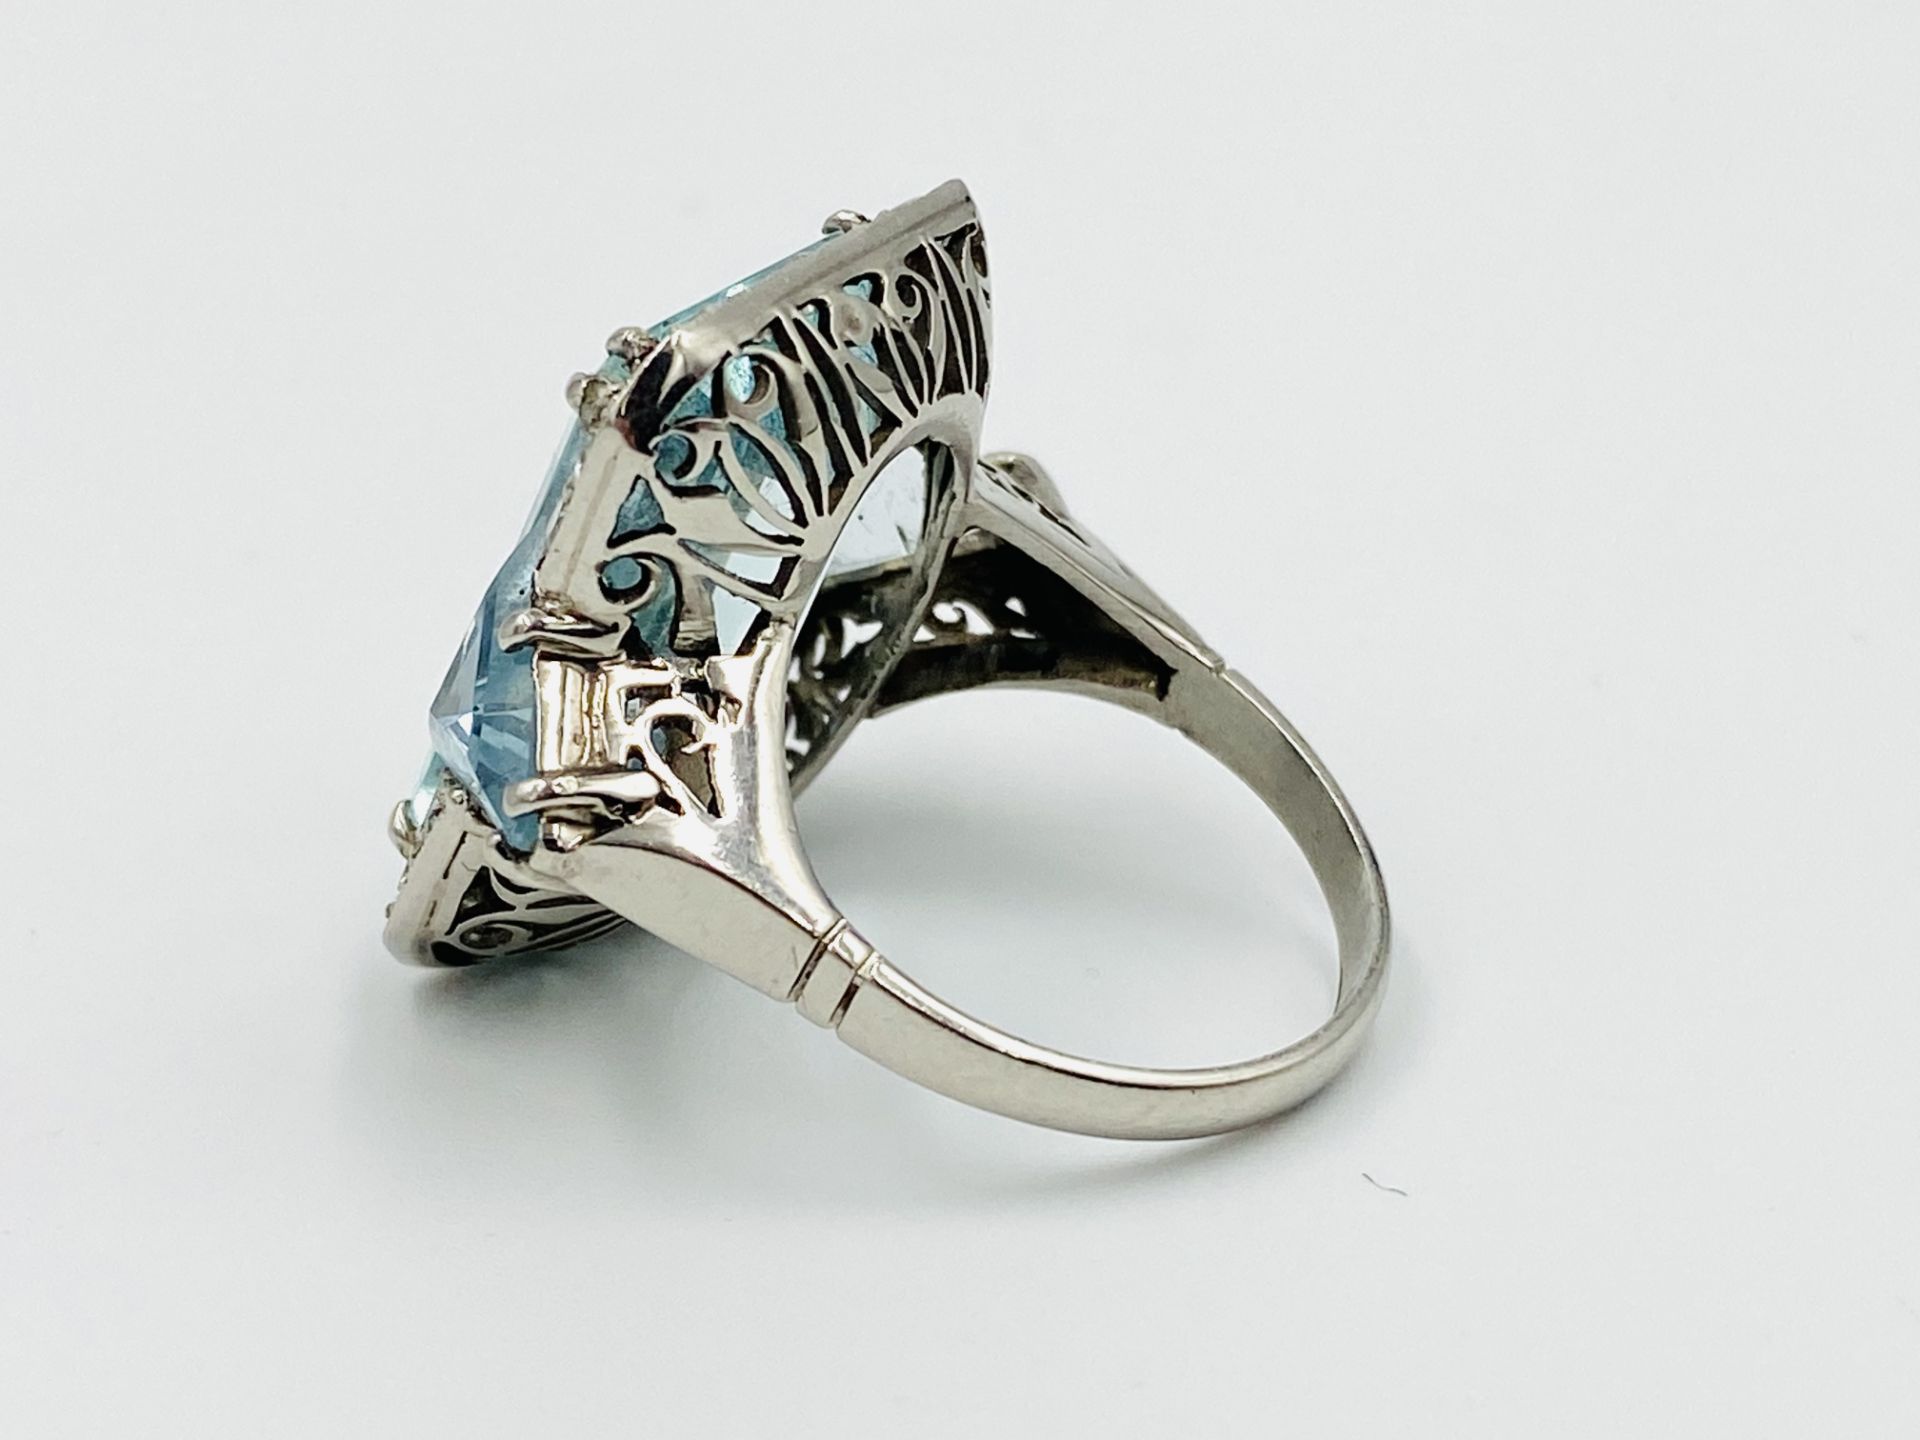 Platinum, aquamarine and diamond ring - Image 3 of 6